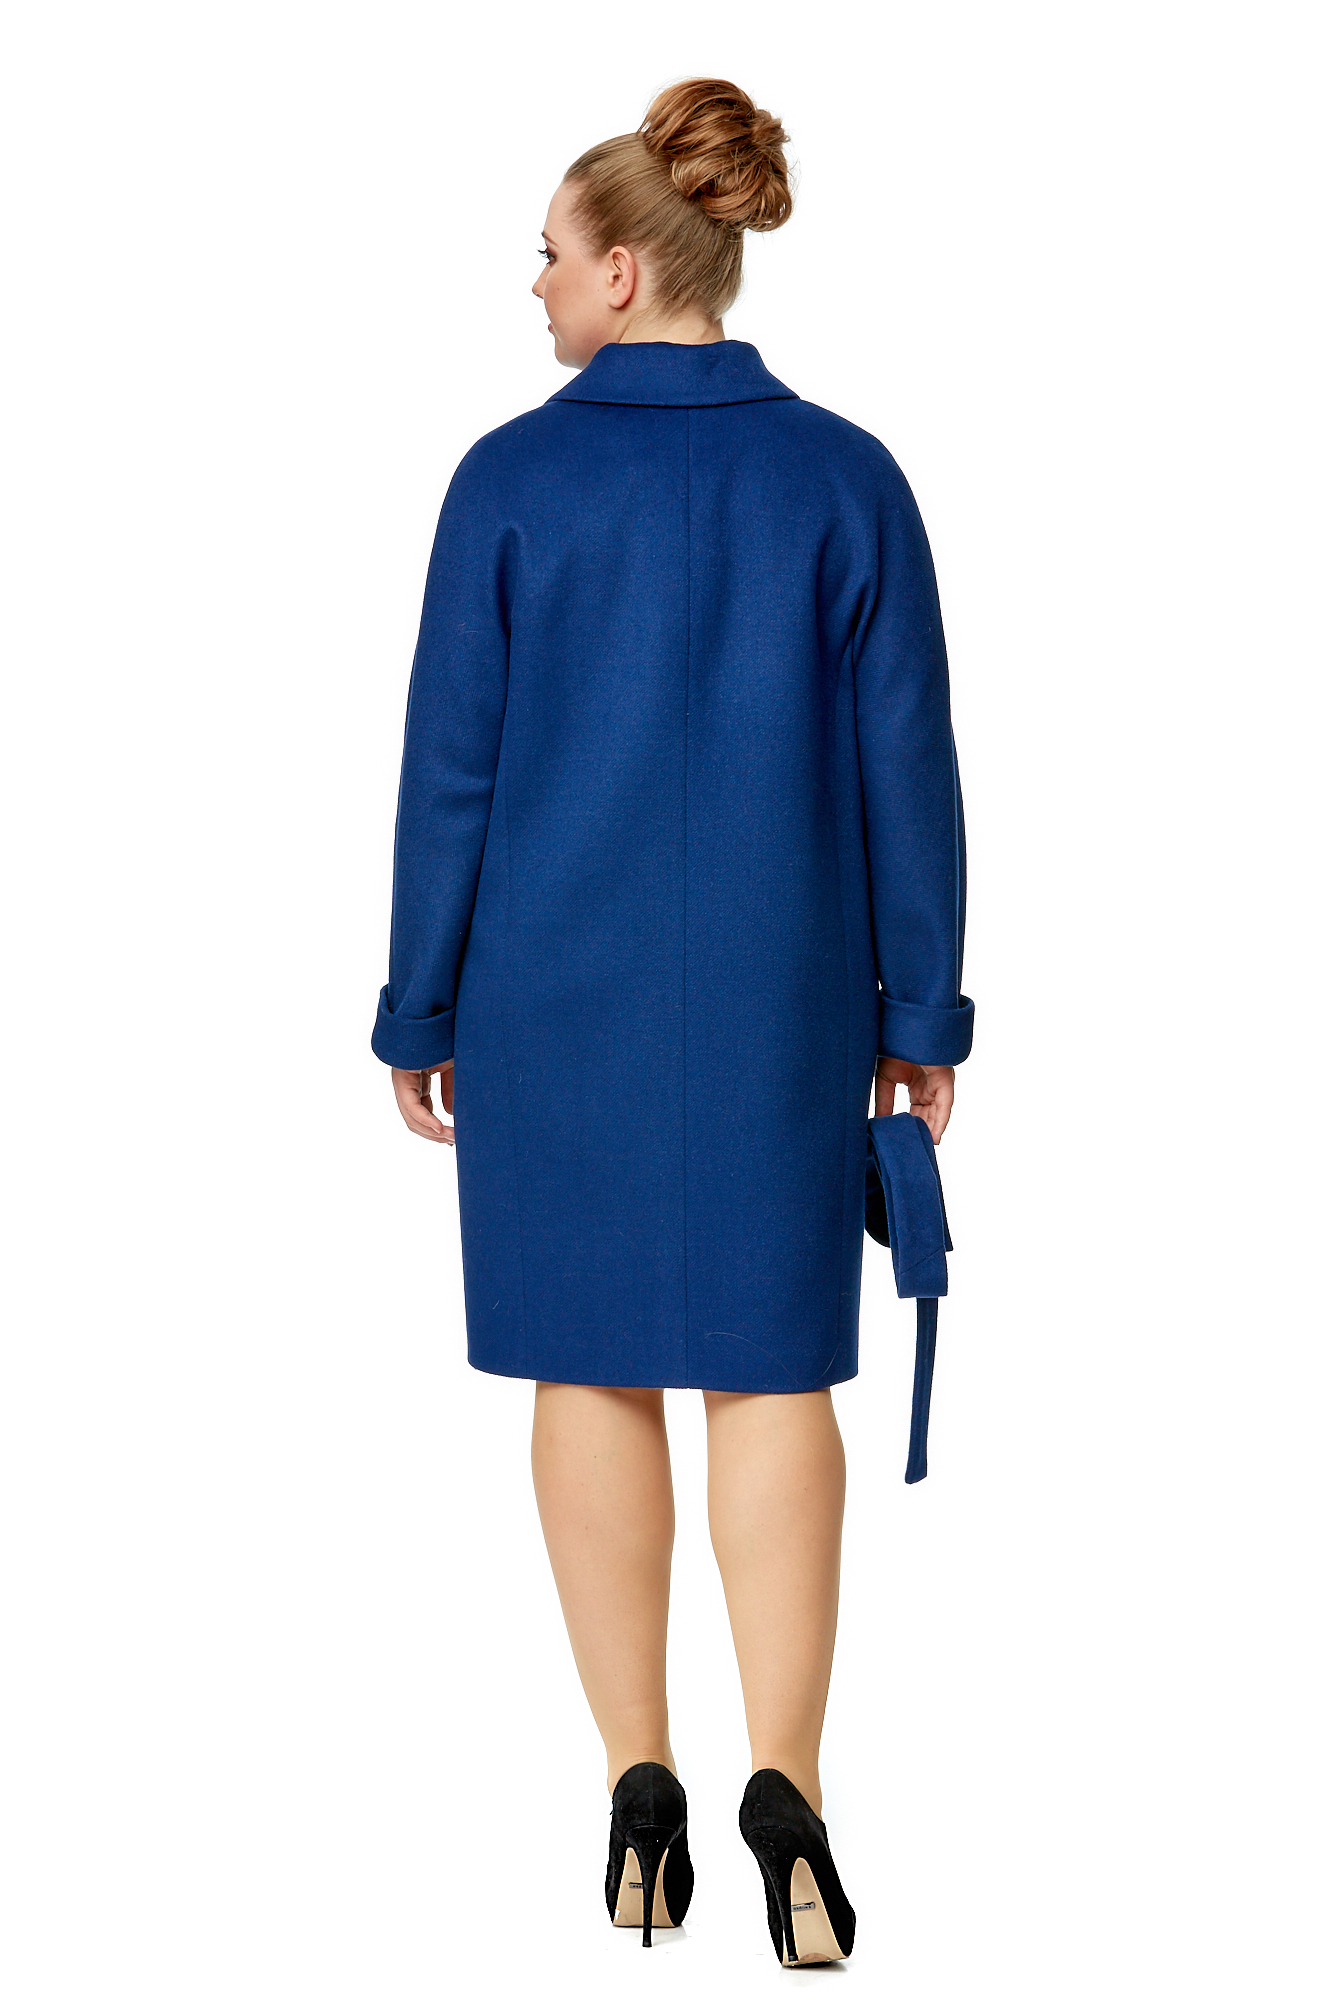 Женское пальто из текстиля с воротником 8001966-3